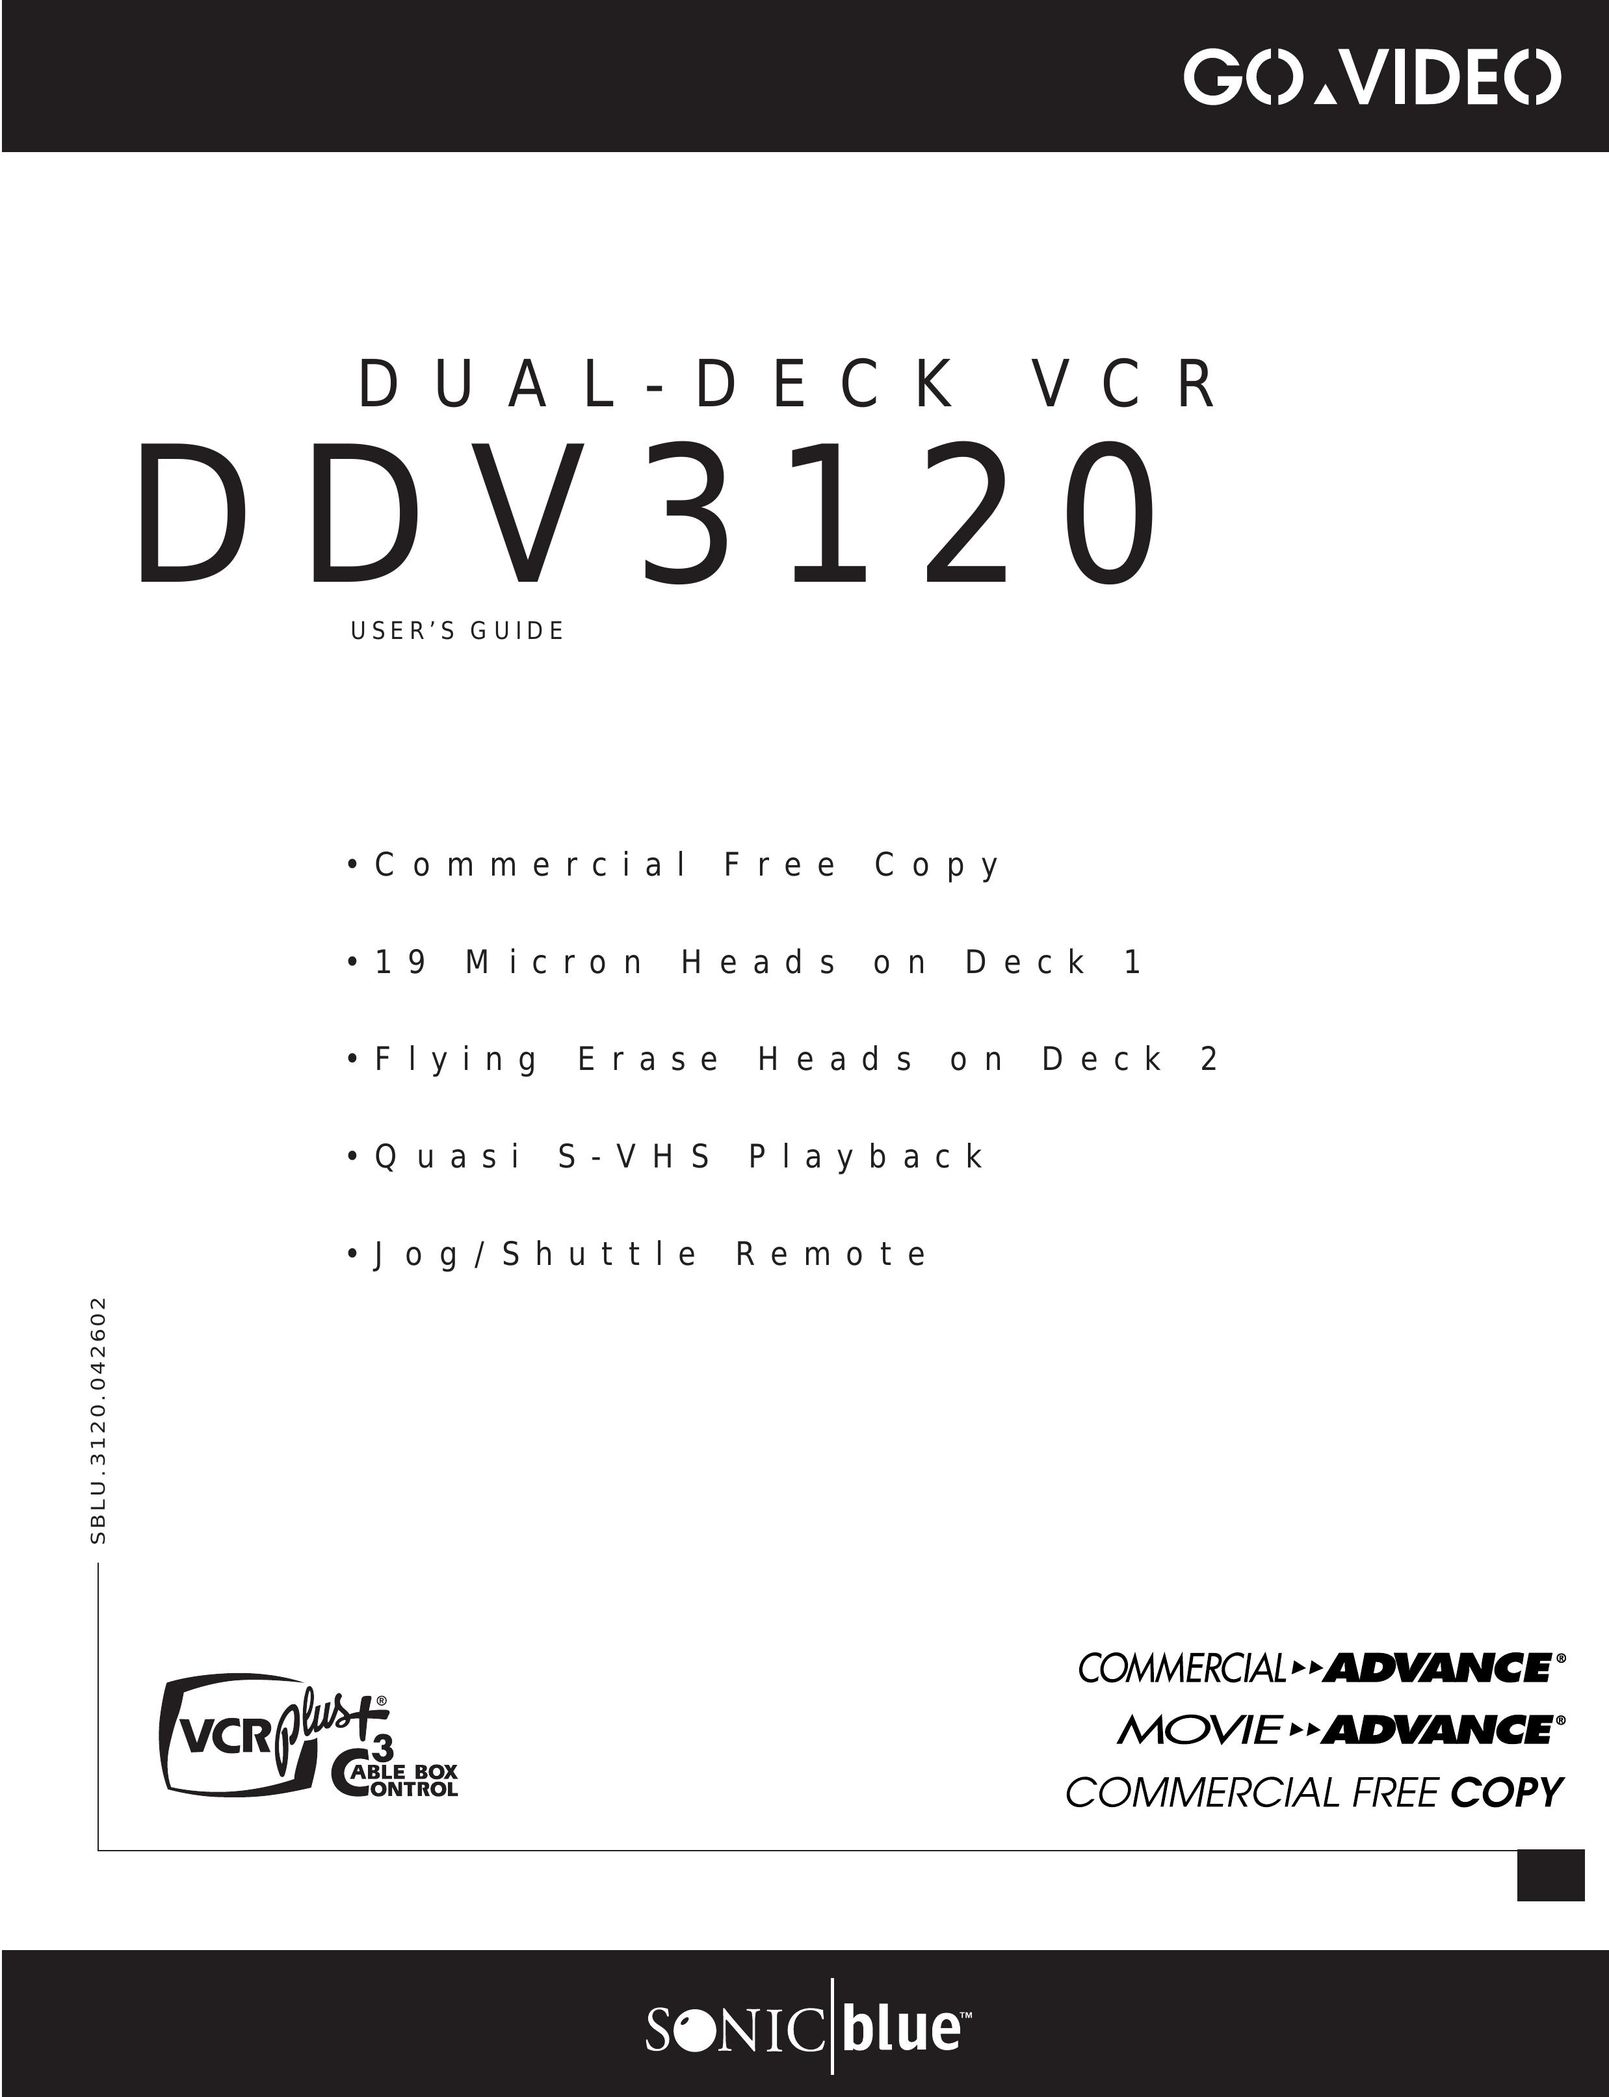 GoVideo DDV3120 VCR User Manual